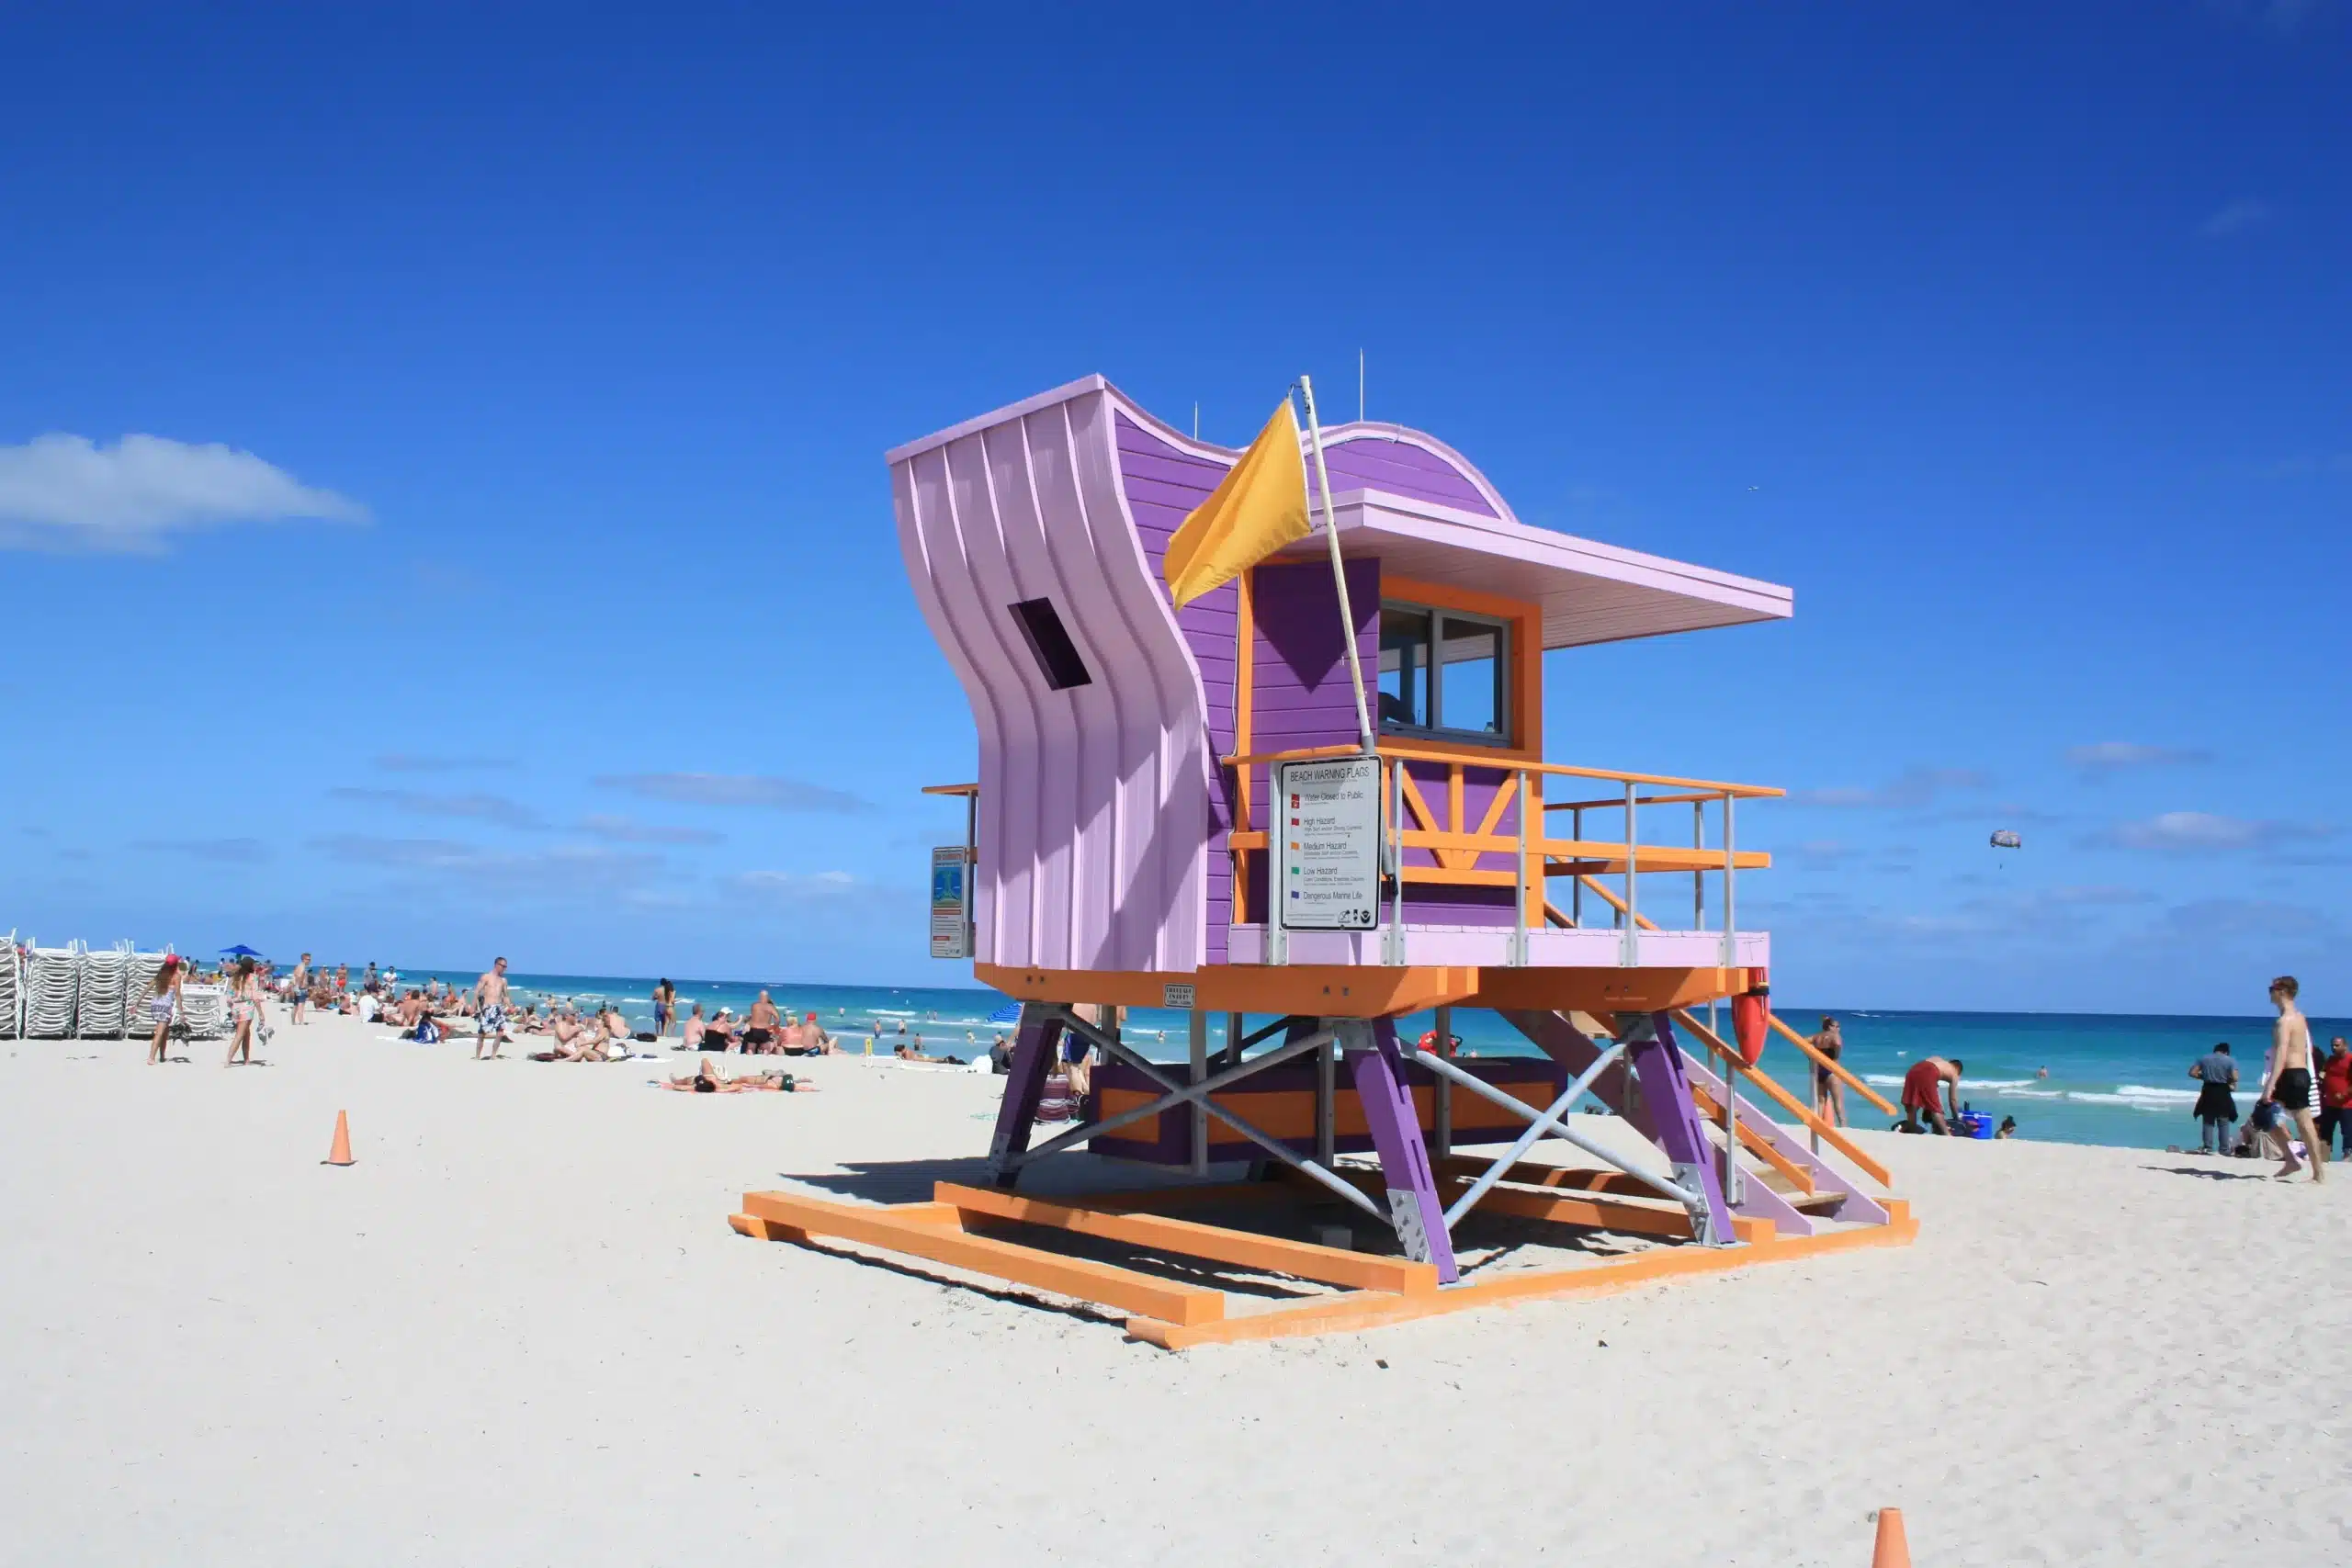 Ein hölzernes Strandwächterhäuschen in Flieder, Lila und Orange auf einem Strand, im Hintergrund das Meer. Miami Beach, Lifeguard Tower, William Lane, Foto: Archiv Architekten